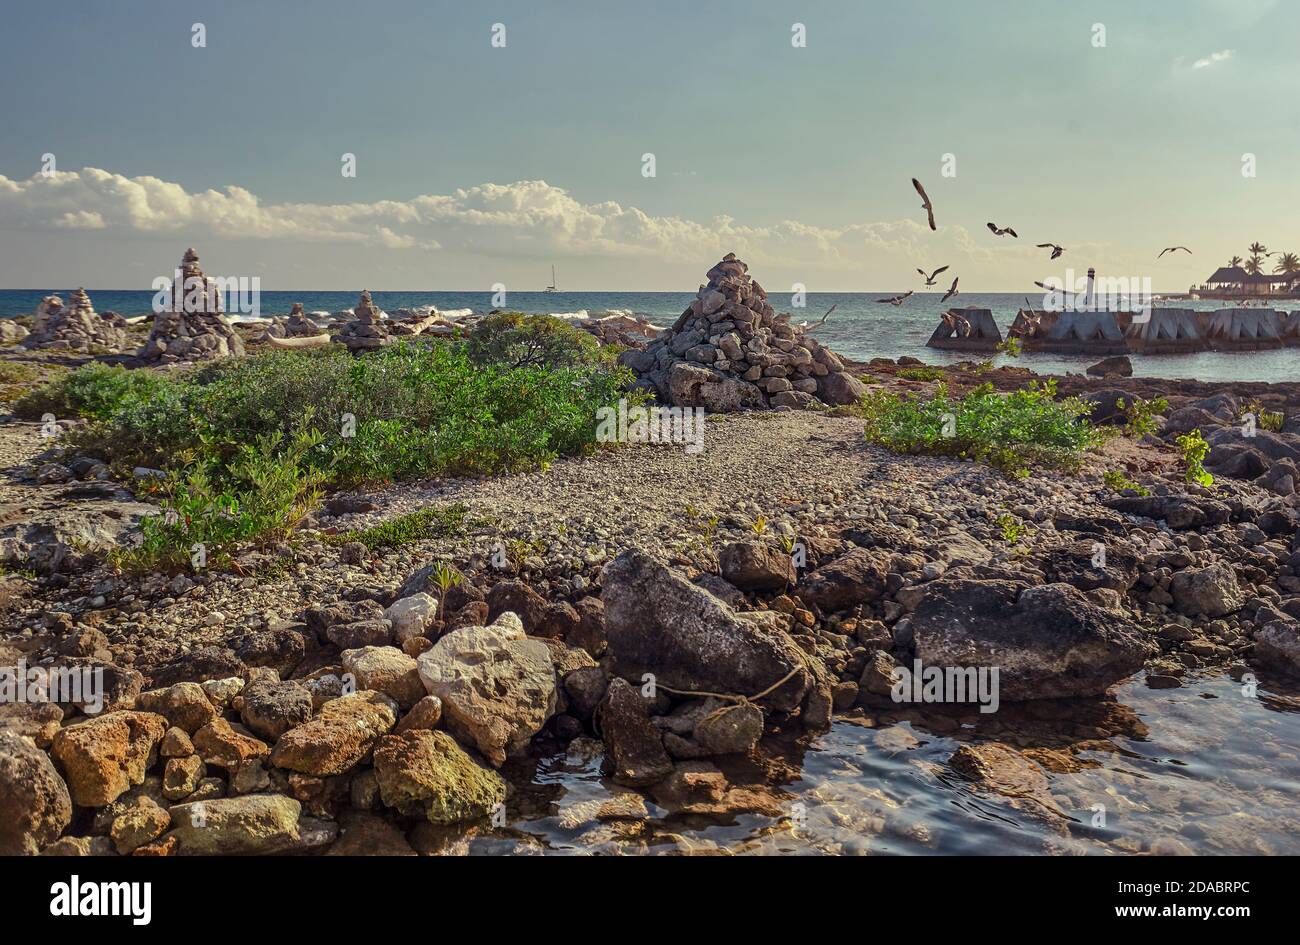 Particolare della vista della spiaggia di Puerto Aventuras in Messico con alcuni gabbiani che volano dal mare alla costa. Foto Stock